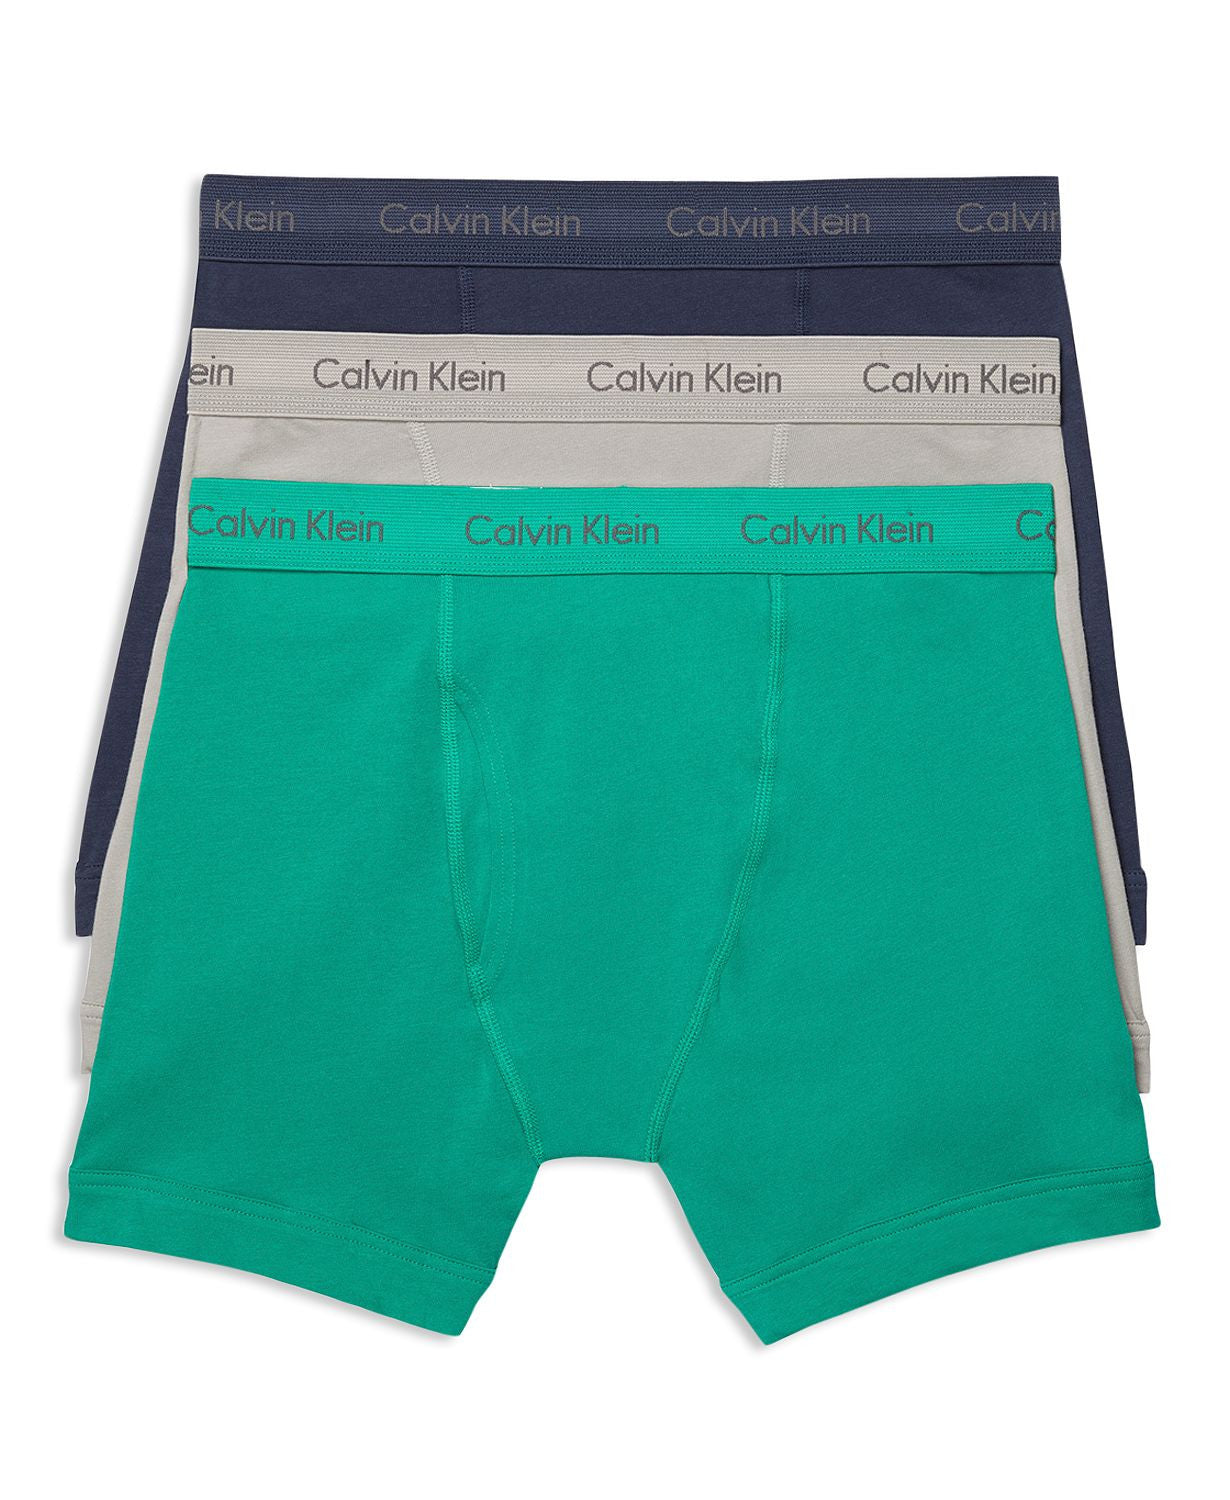 Calvin Klein Cotton Stretch Boxer Briefs Pack Of 3 Ghost Gray/tourney/indigo